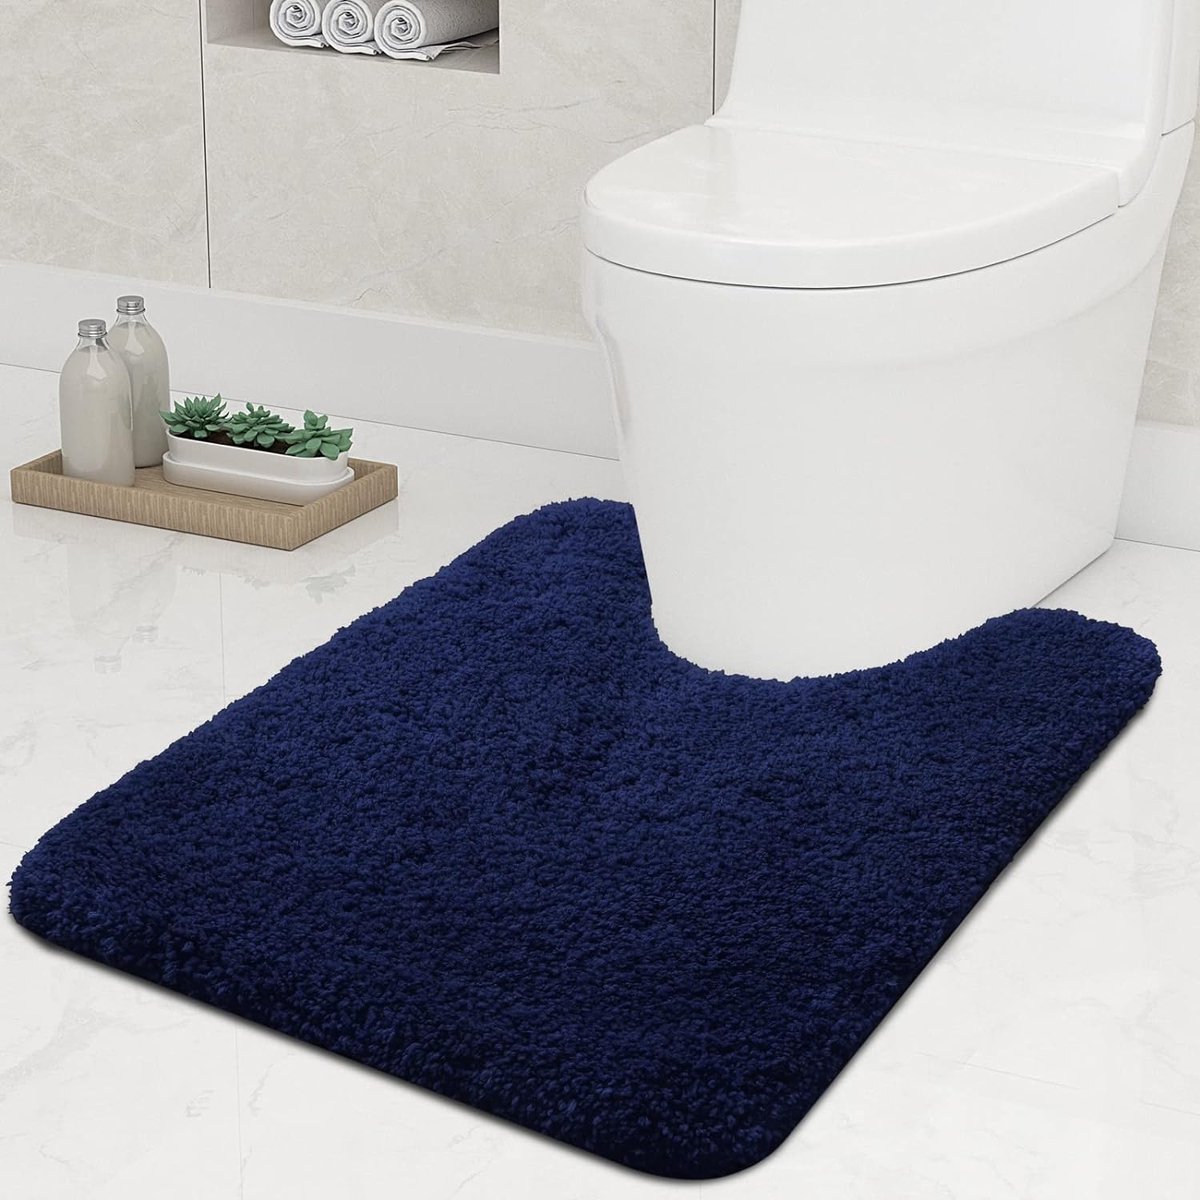 Antislip zachte mat voor toilet met uitsparing, afmetingen 51 x 61 cm, absorberende badmat, staande toiletmat, wasbare badmat voor toilet, marineblauw.